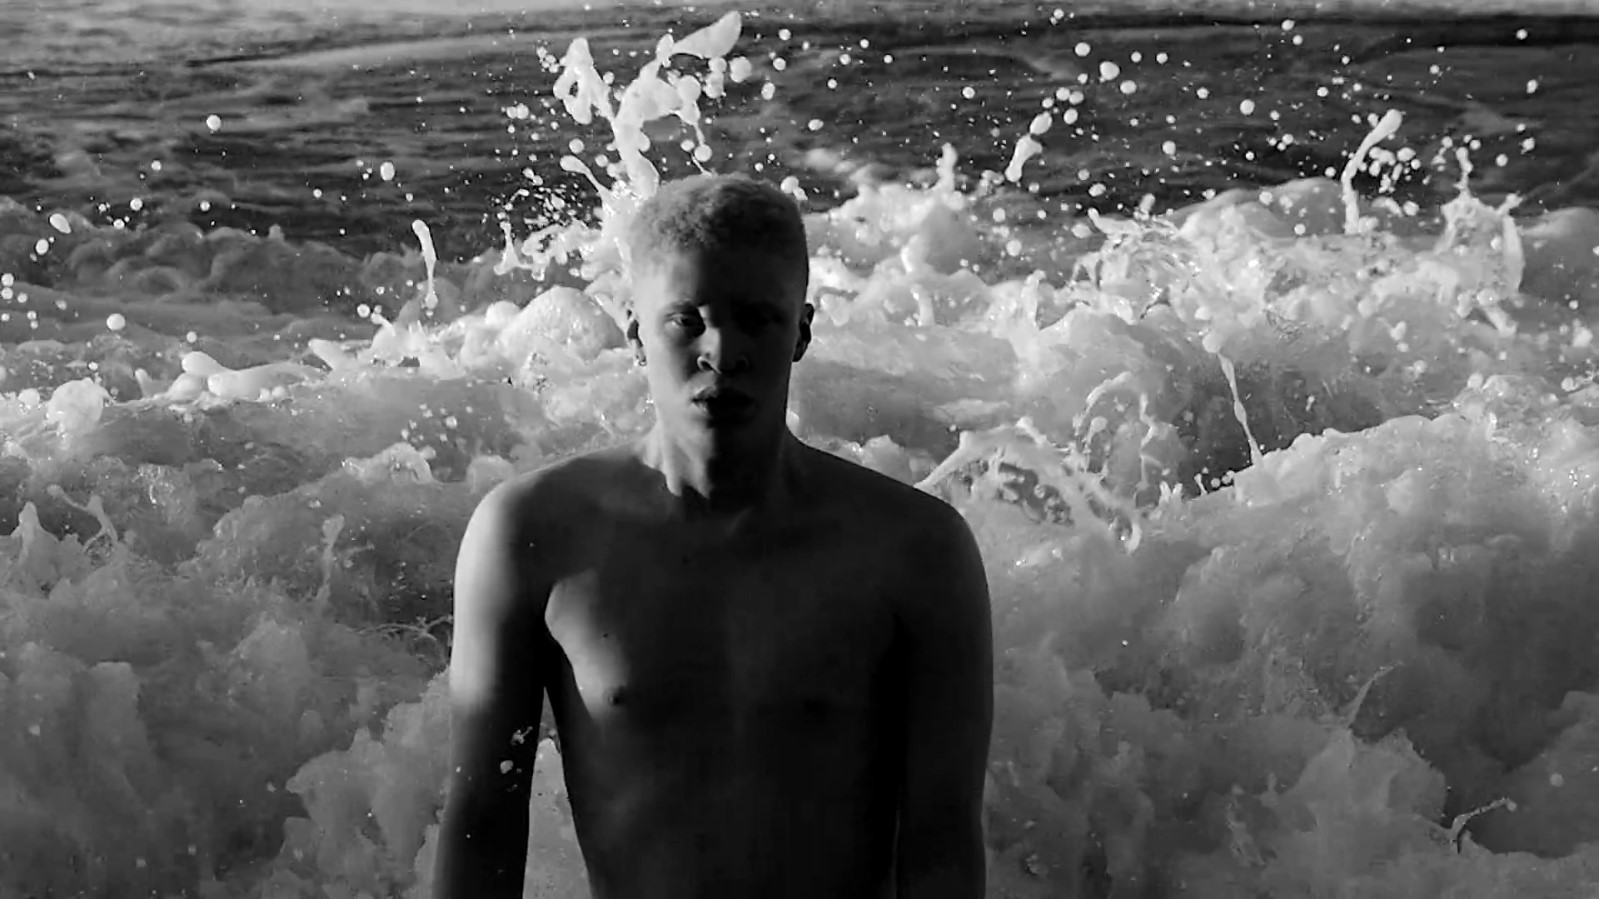 ¡Le llega hasta la rodilla! El kilométrico pene de modelo albino en un video musical se vuelve viral (FOTOS)